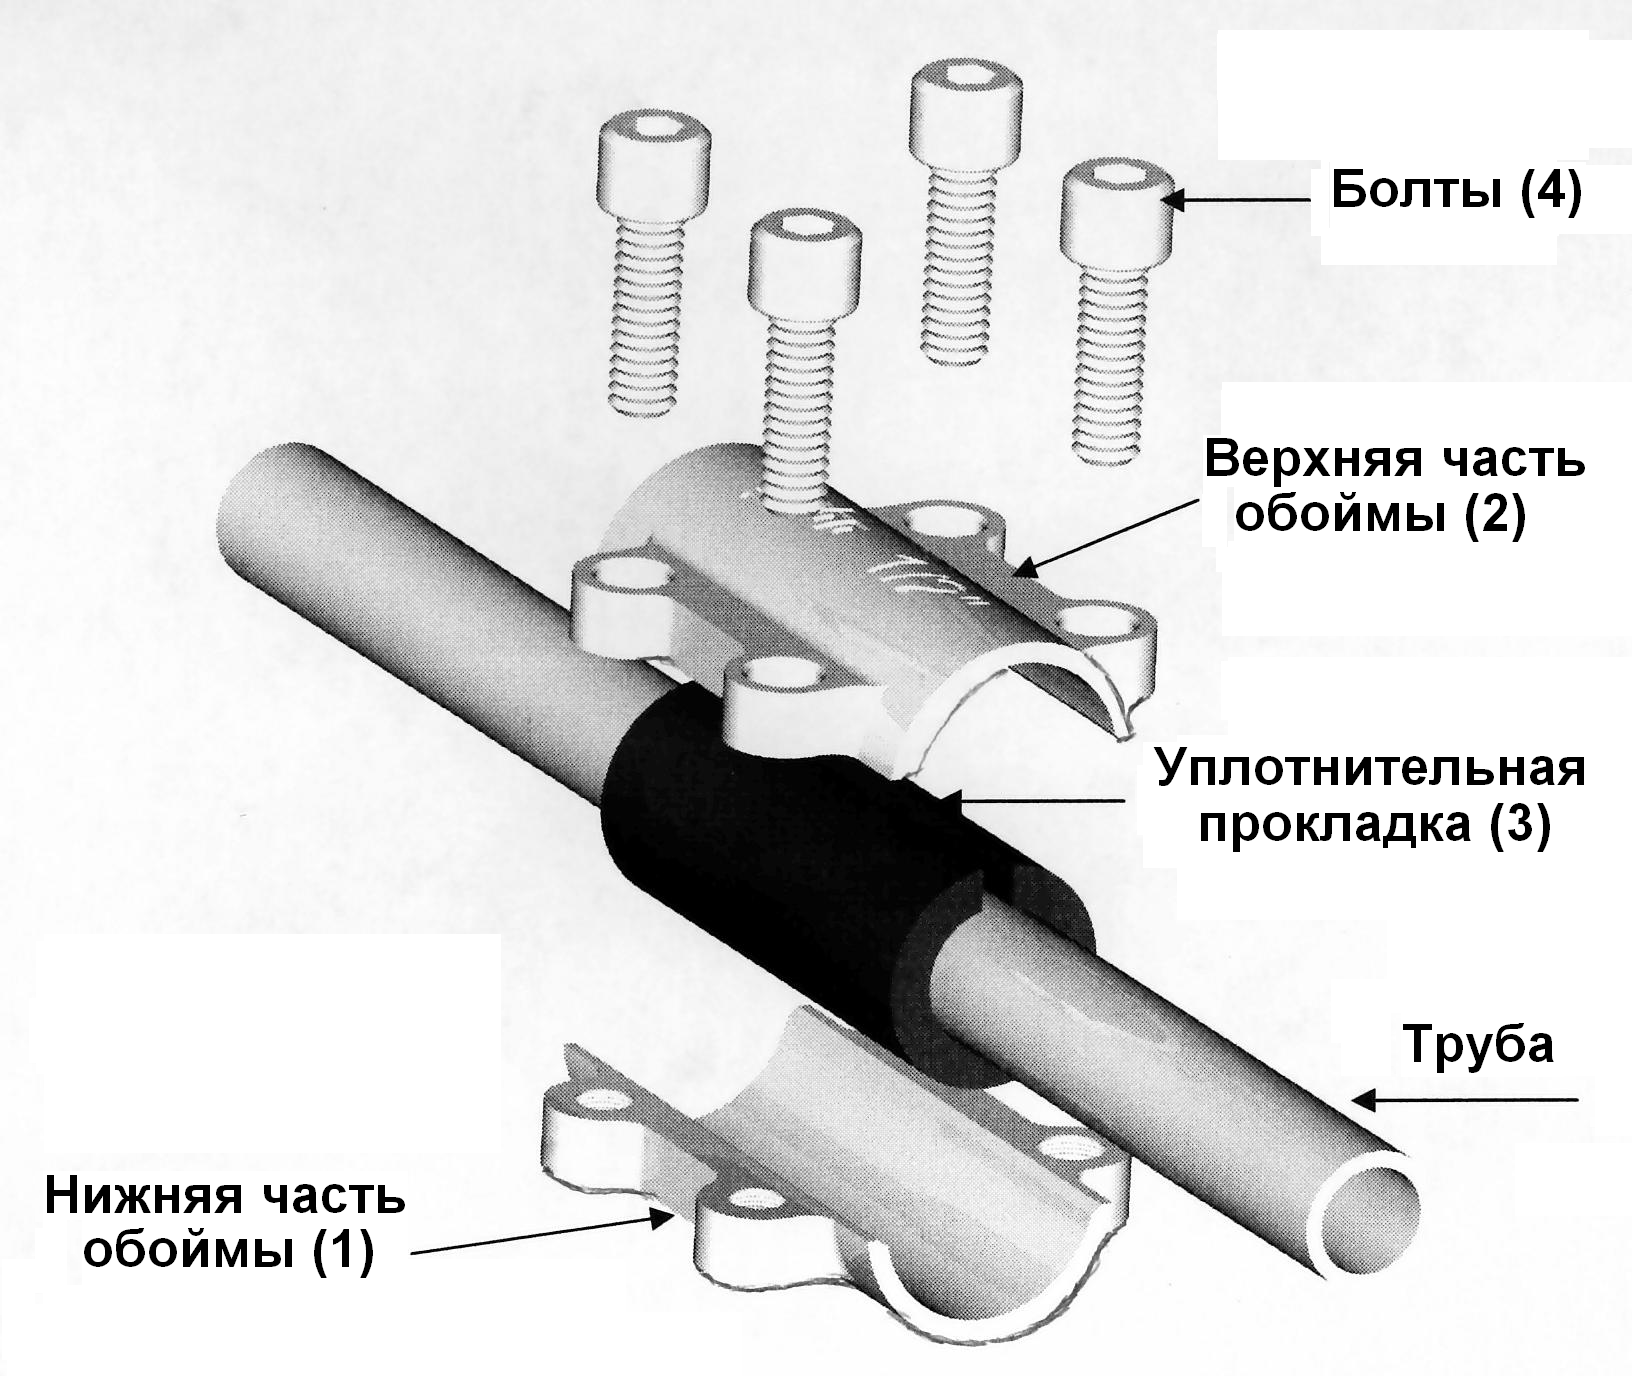 Различные соединения труб. Обойма ремонтная Gebo DSK 1/2". Соединение металлических труб без сварки и резьбы. Ремонтная муфта для полипропиленовых труб 1/2. Схема соединения стальных труб на резьбе.